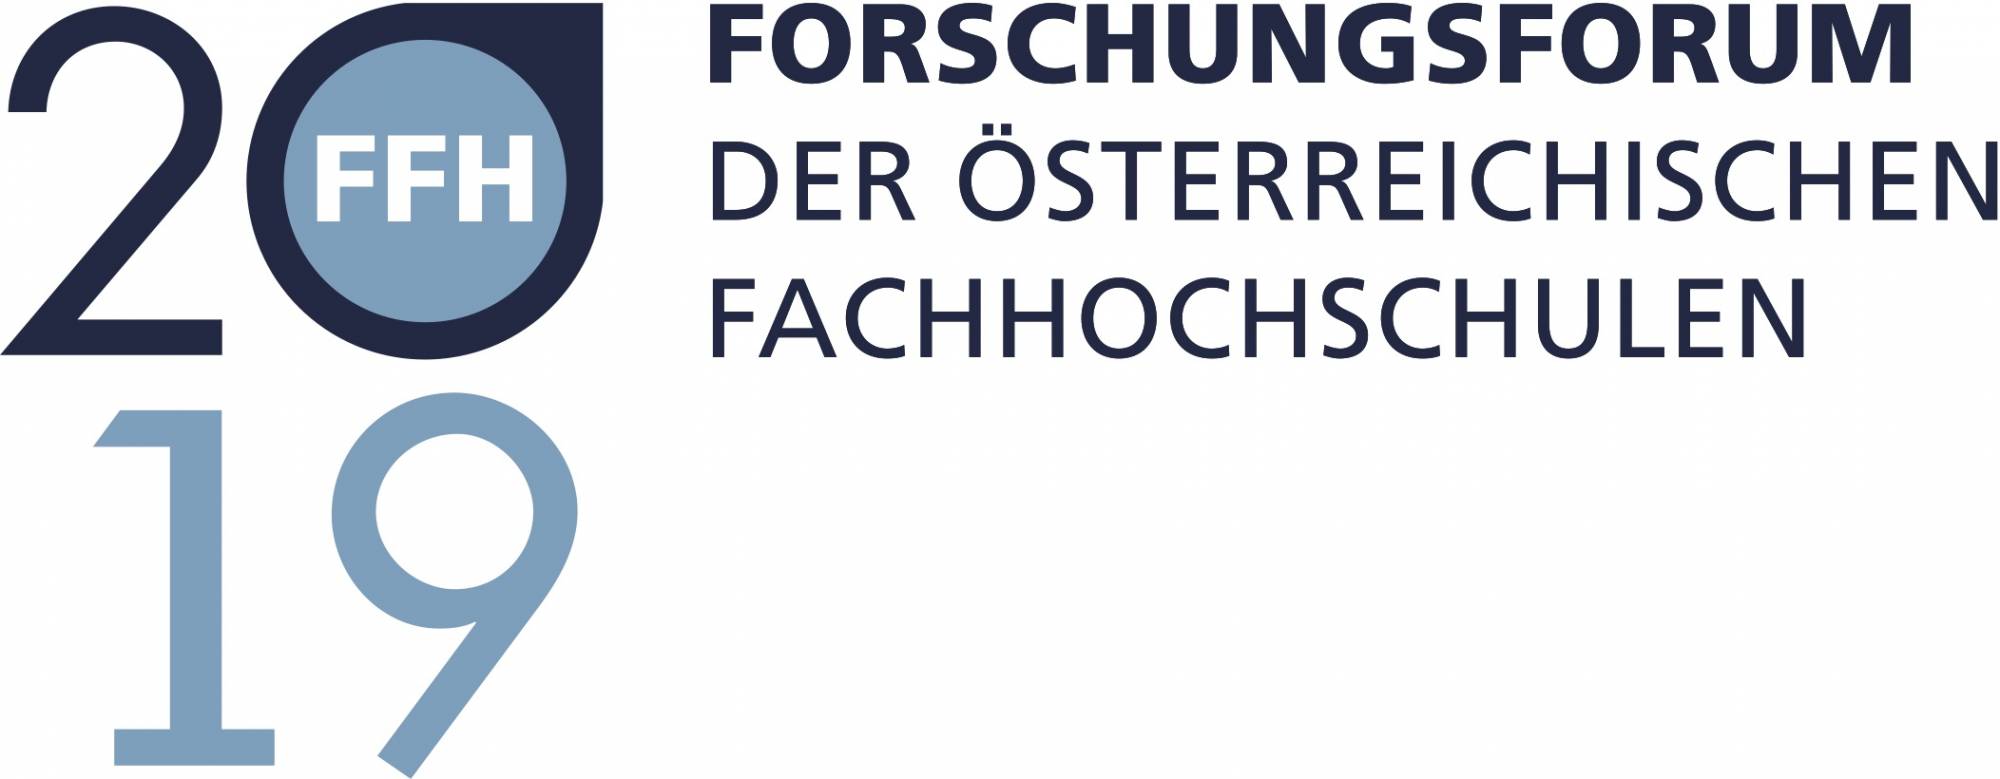 Logo Forschungsforum der österreichischen Fachhochschulen 2019 FFH